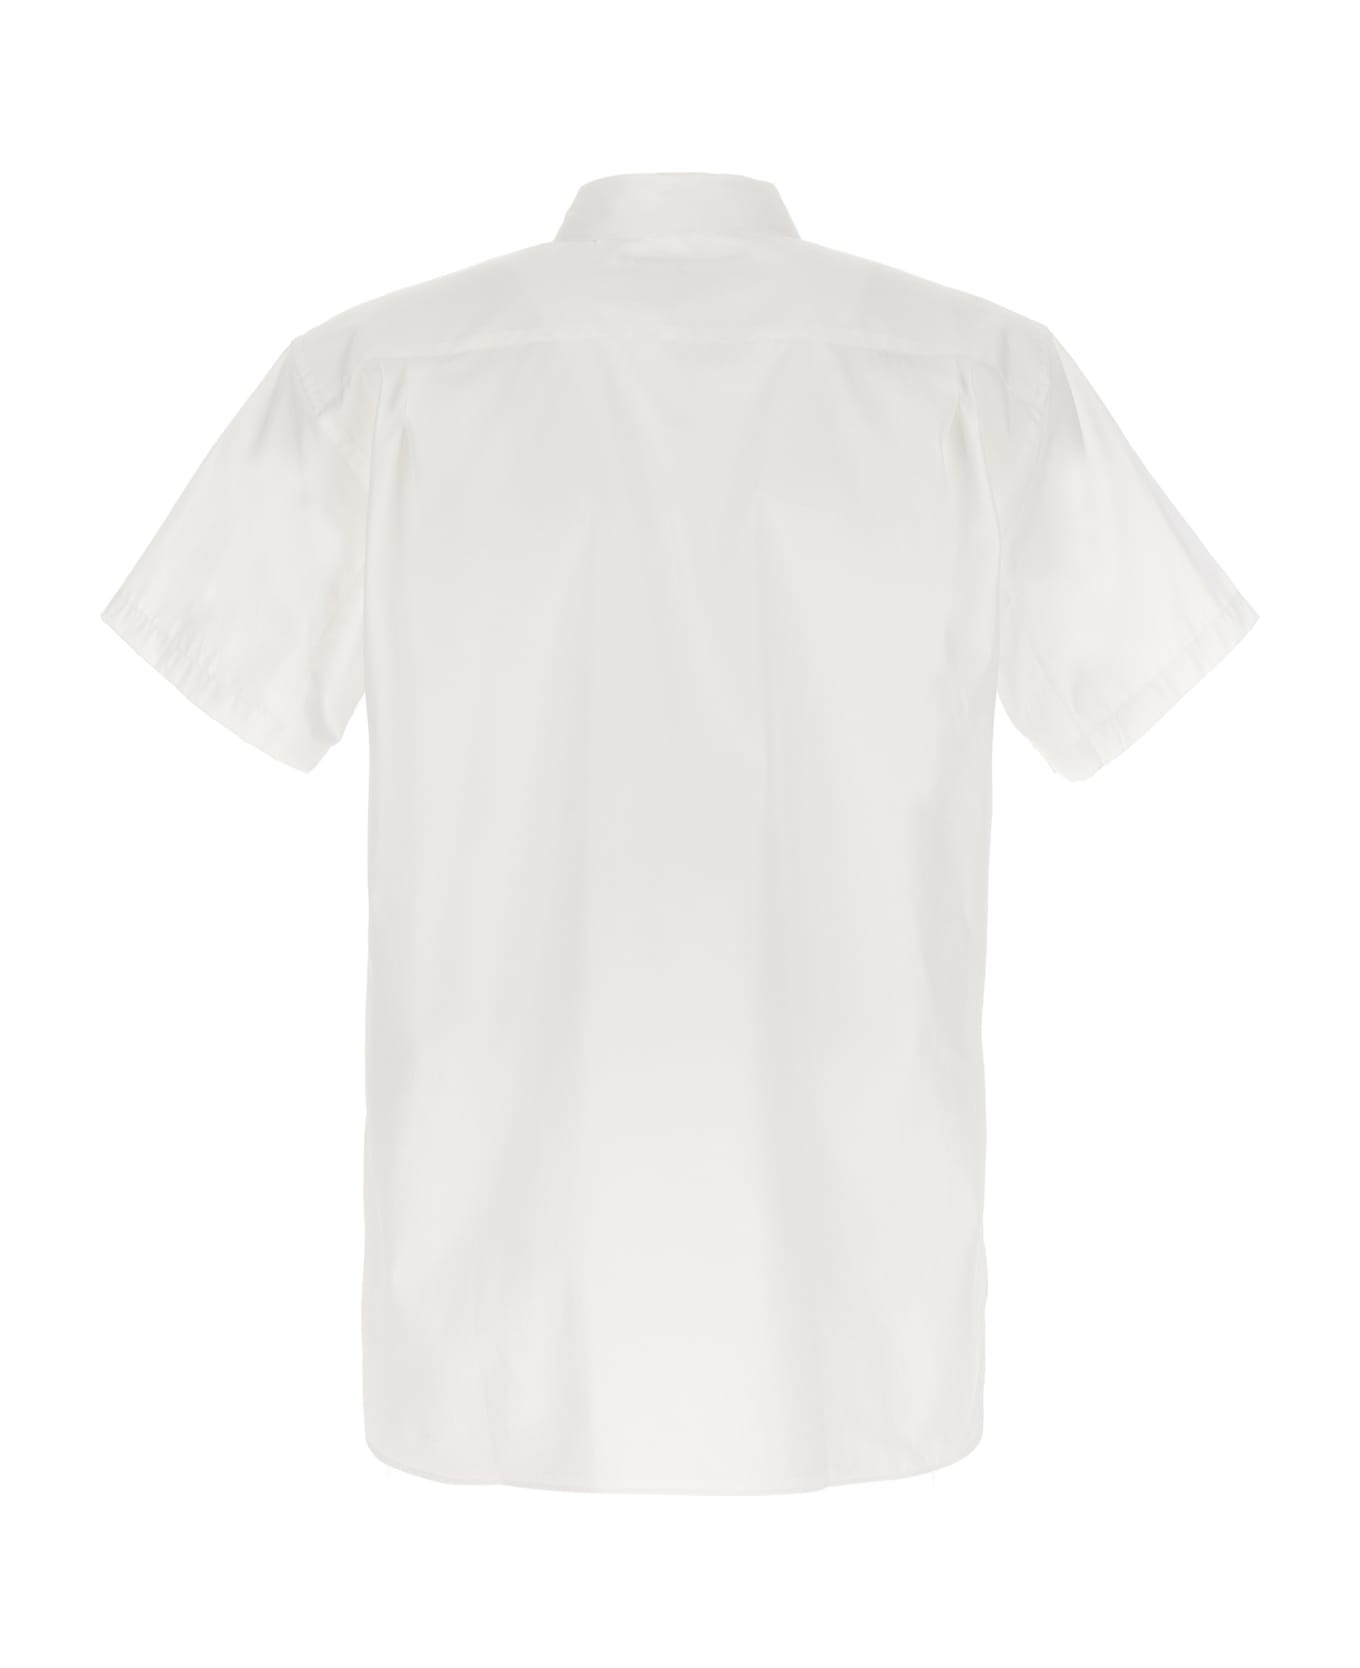 Comme des Garçons Shirt X Brett Westfall Fresh Shirt - White